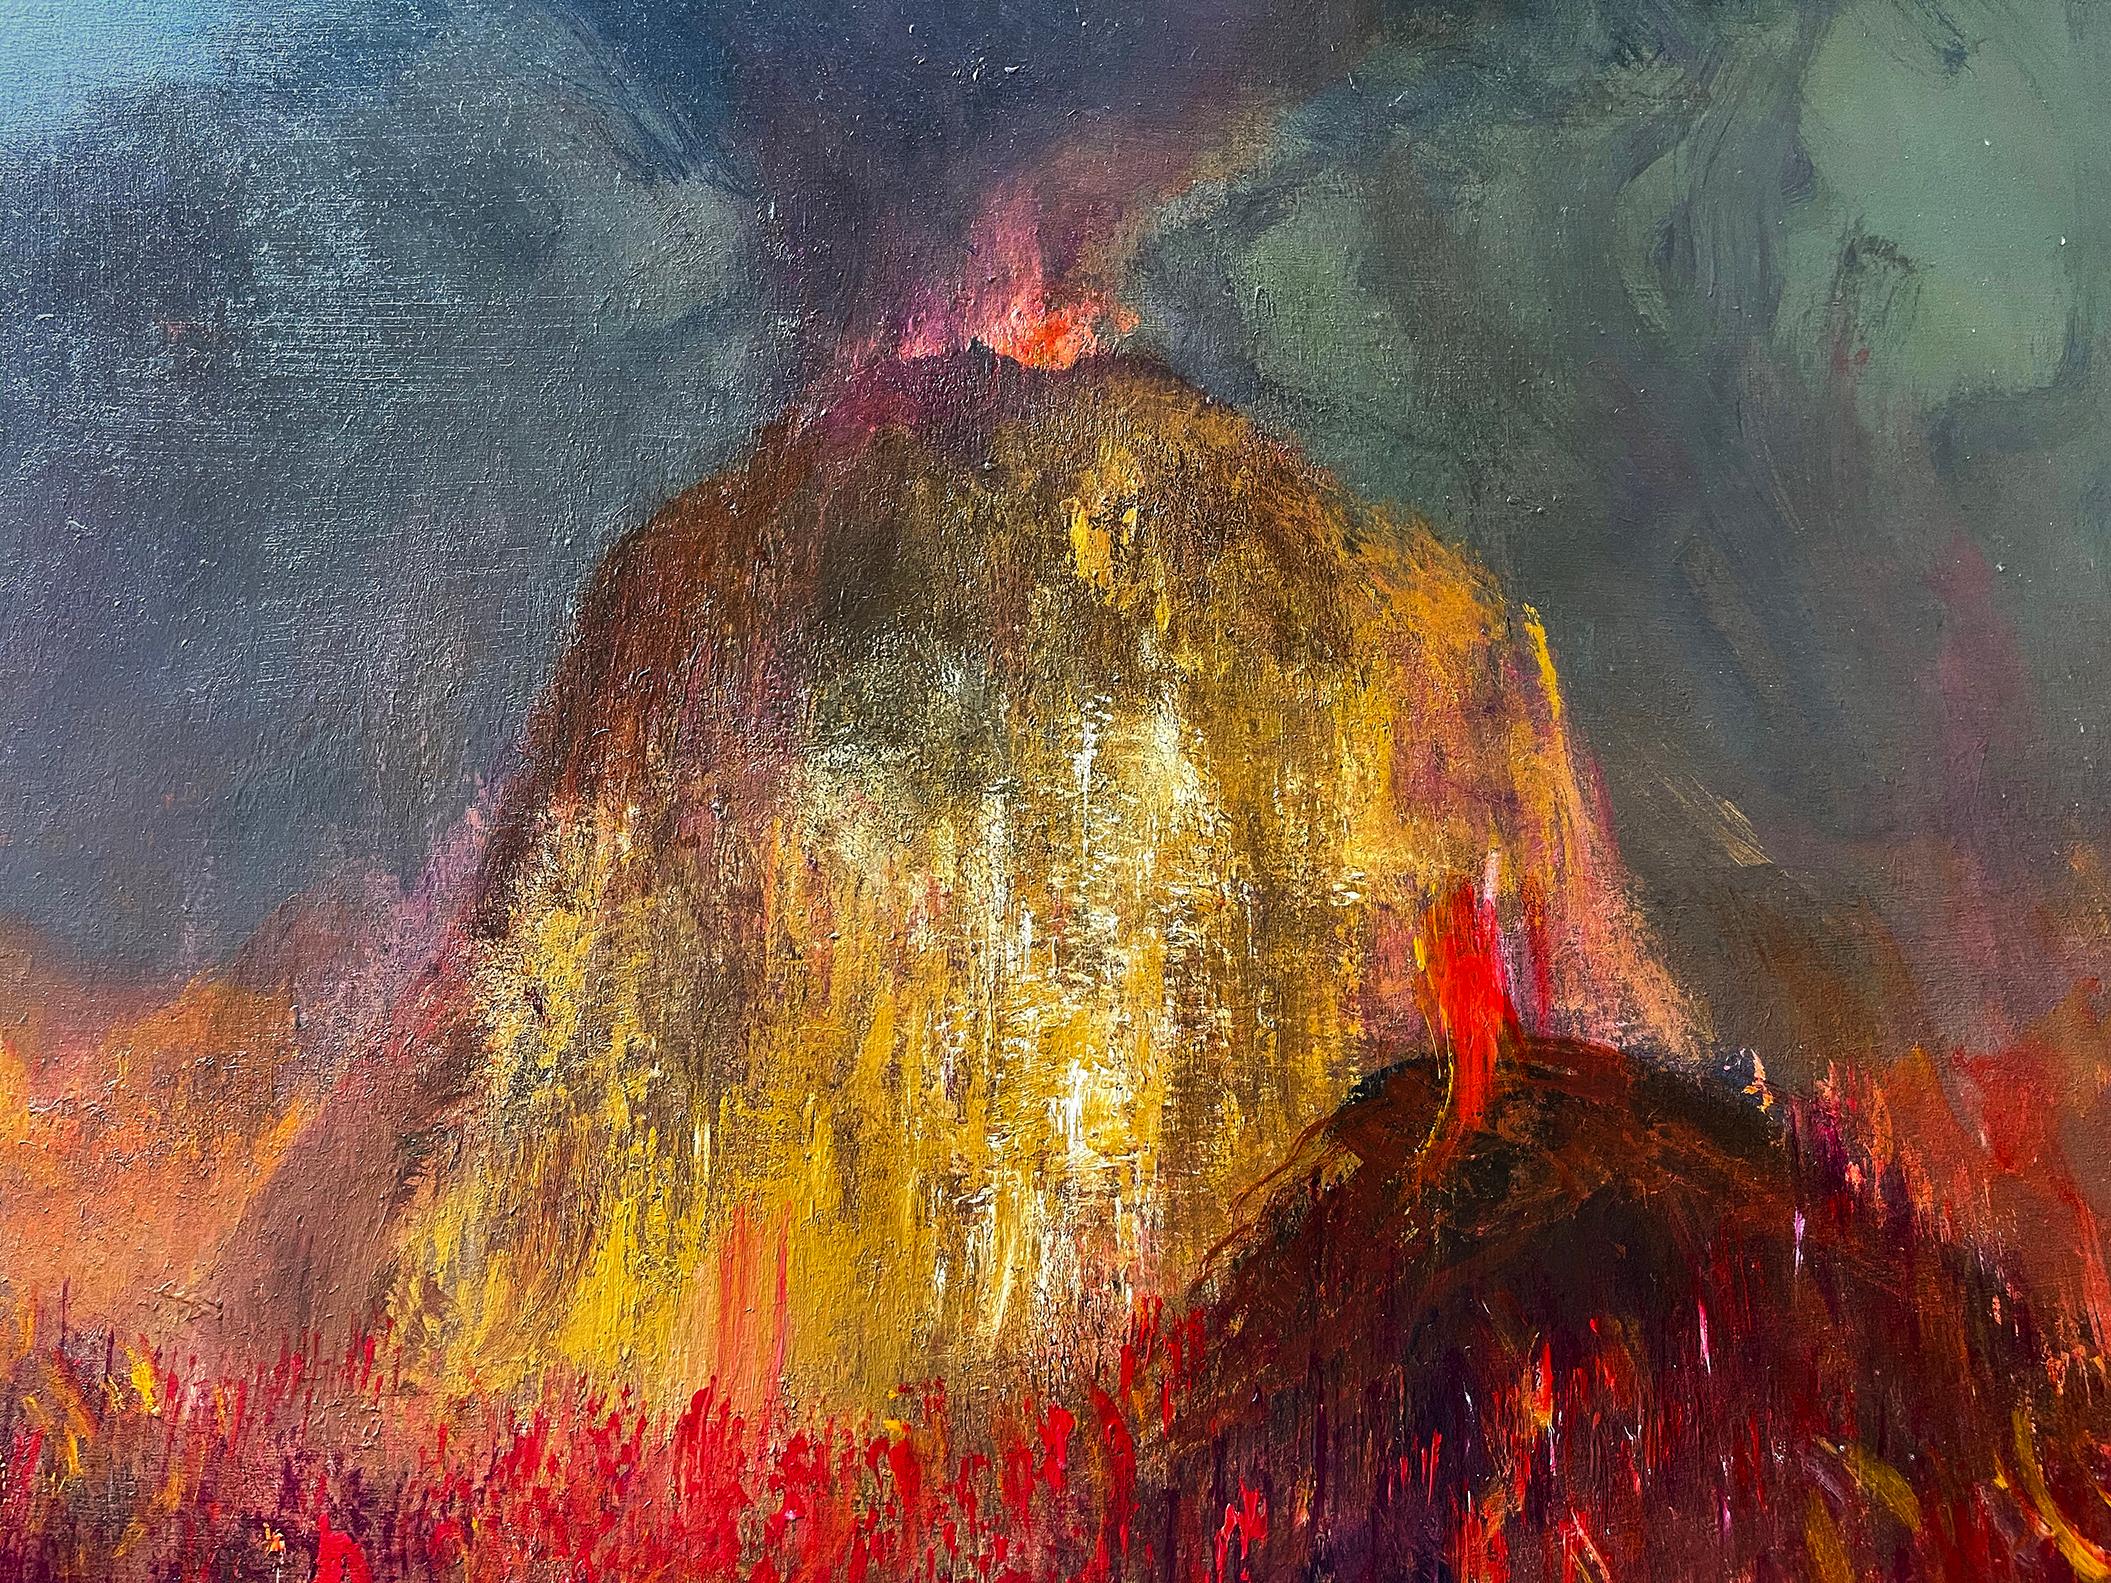 Éruption de volcan - Foulard de lave explosif de l'enfer - Surréalisme Painting par Peter Ellenshaw